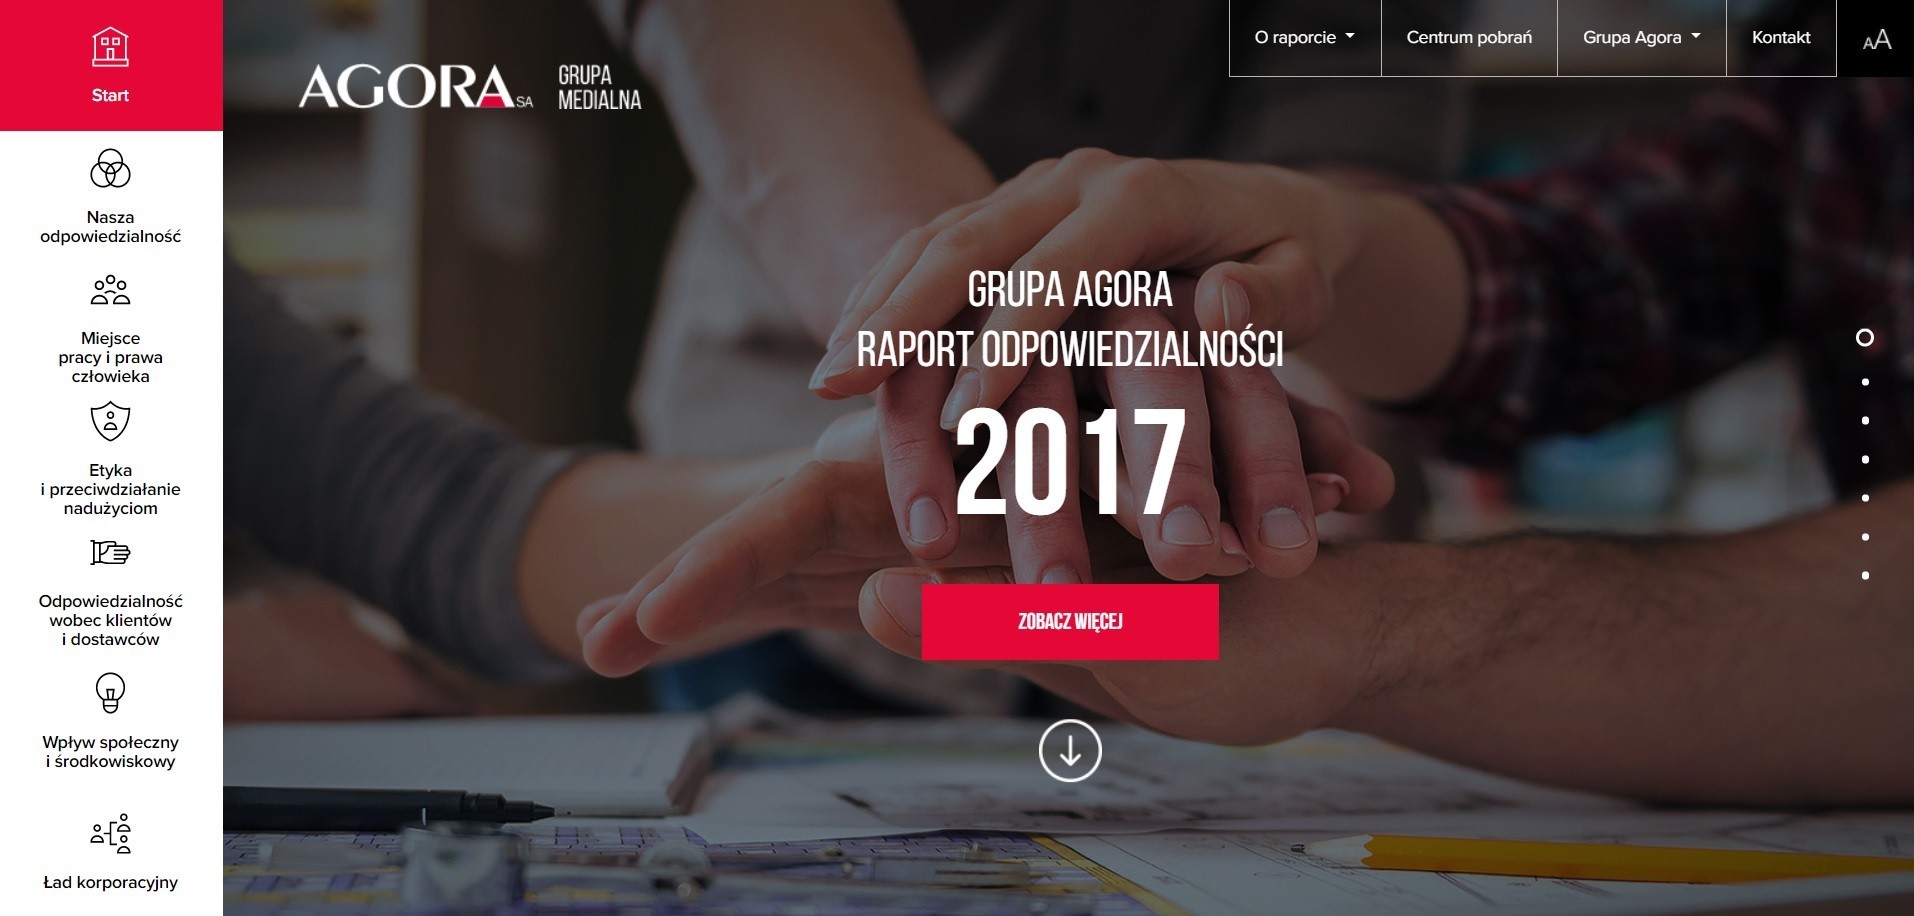 „Codziennie odpowiedzialni” – interaktywny Raport odpowiedzialności Grupy Agora 2017 już dostępny!